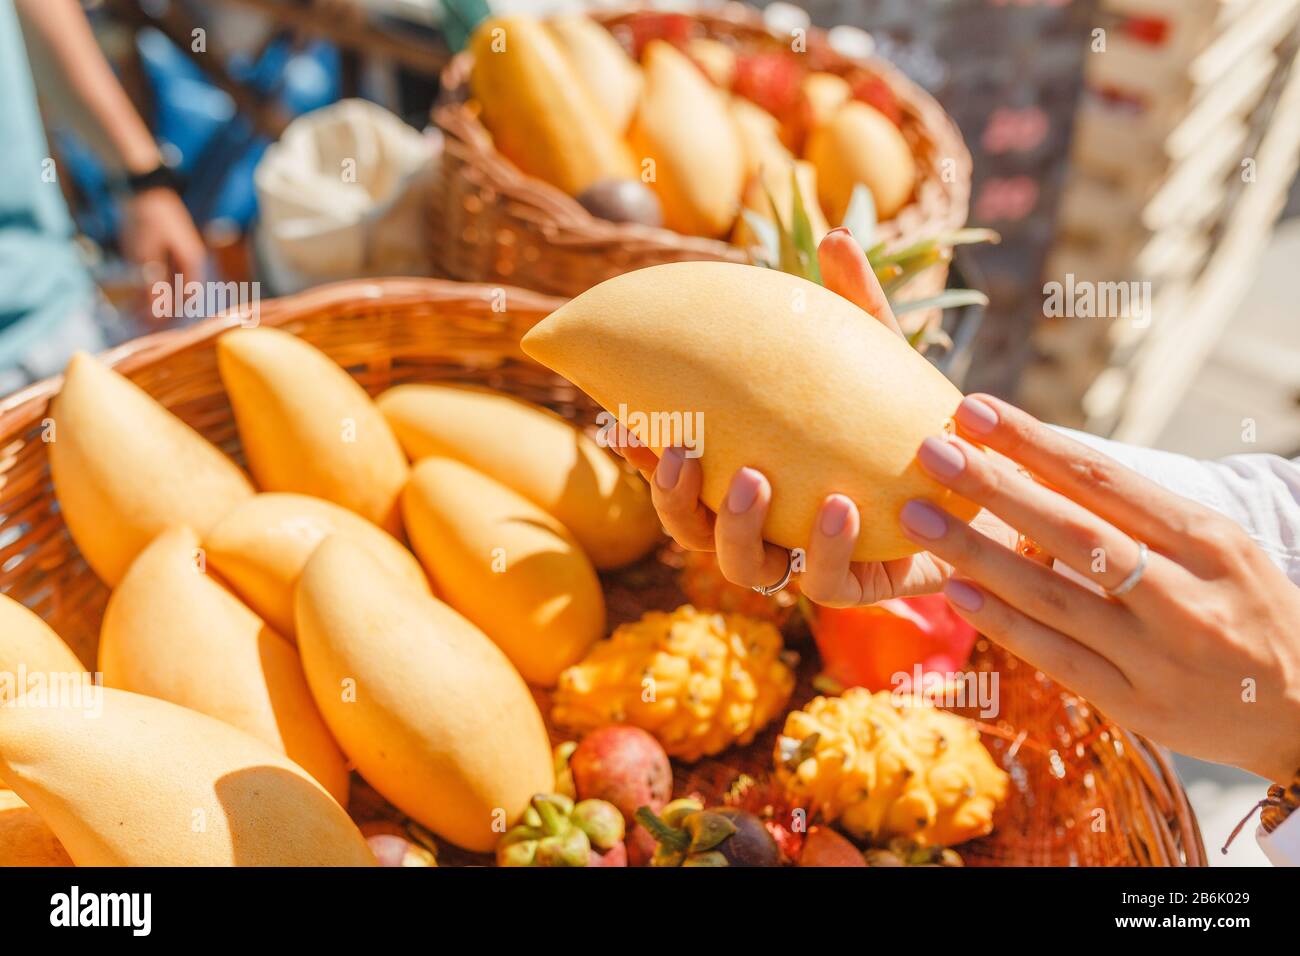 Une jeune femme sur le marché des agriculteurs choisit des fruits exotiques tropicaux comme le rambutan, la mangue et le dragon Banque D'Images